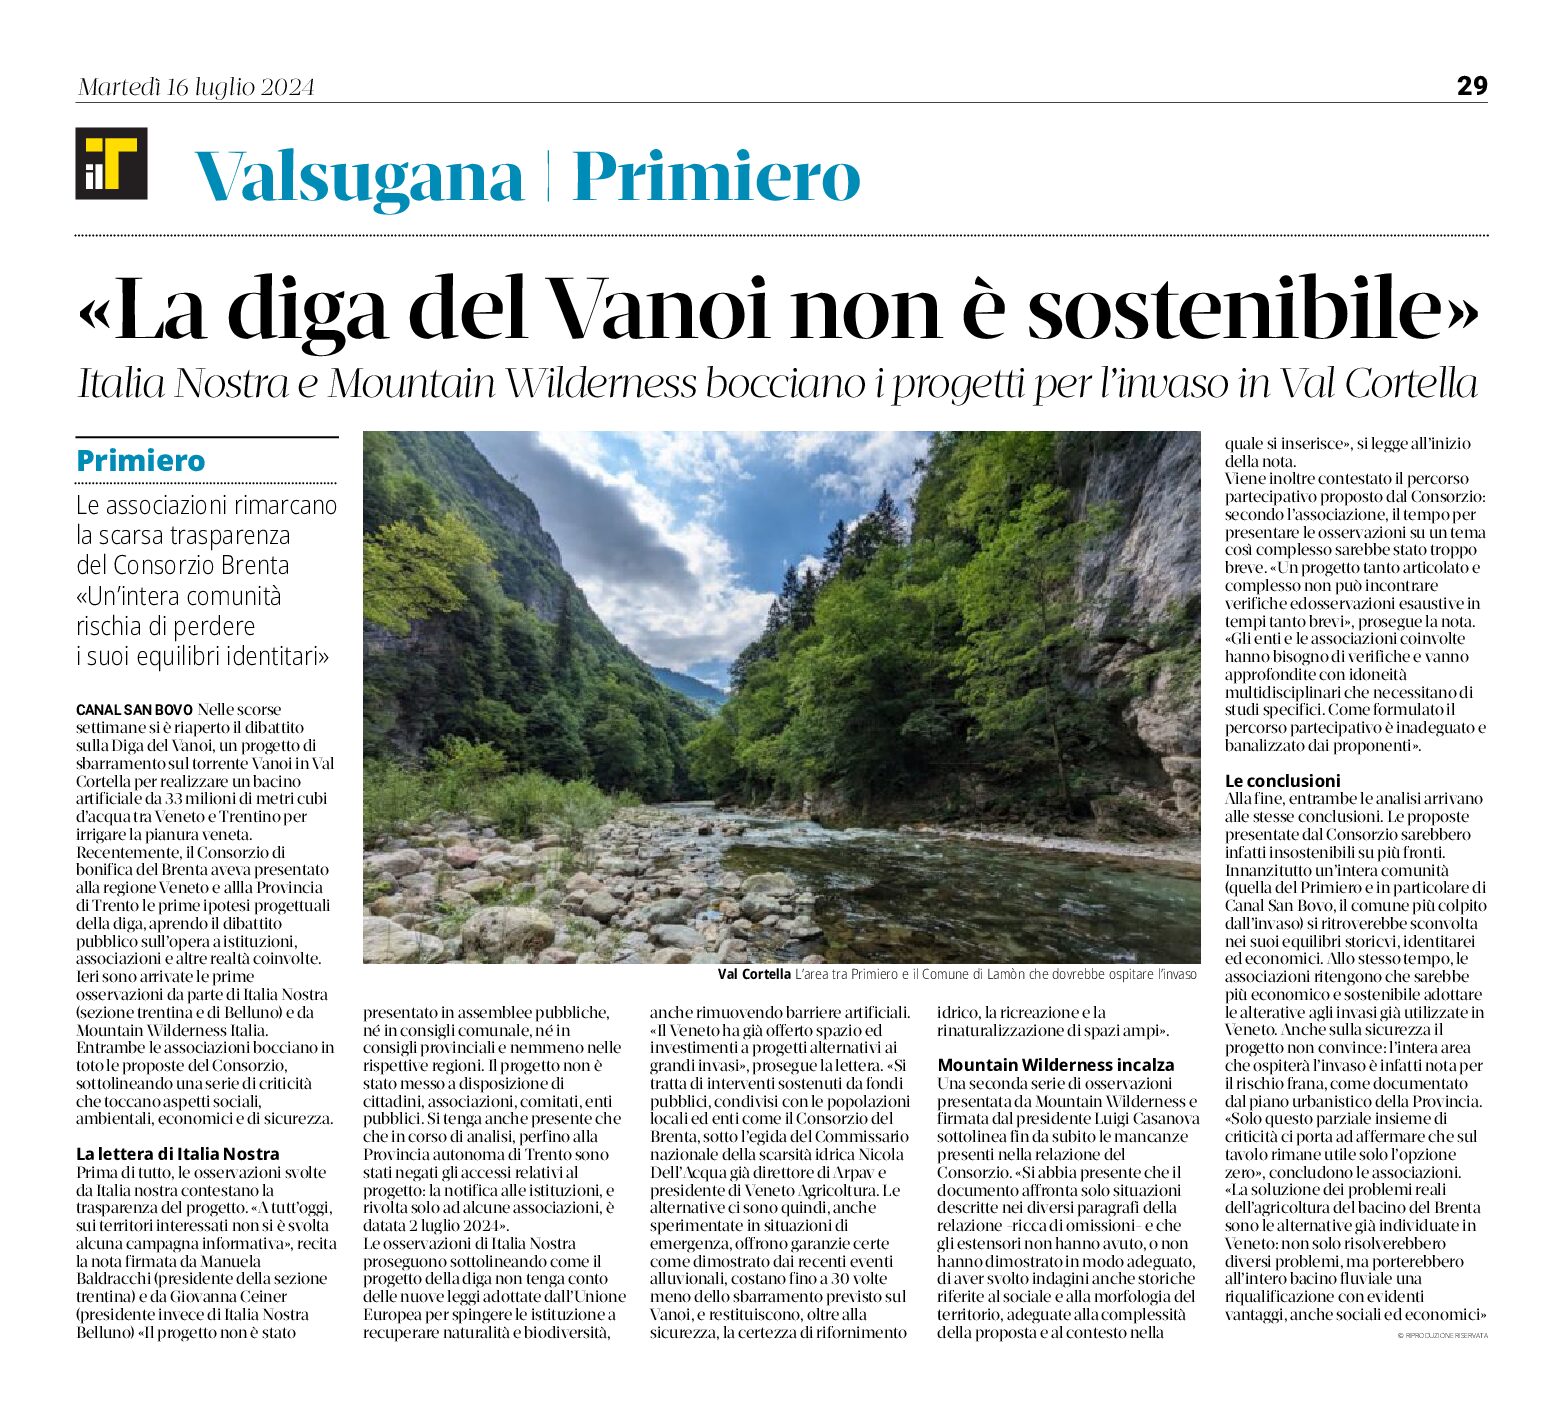 Diga del Vanoi: Italia Nostra e Mountain Wilderness “non è sostenibile”